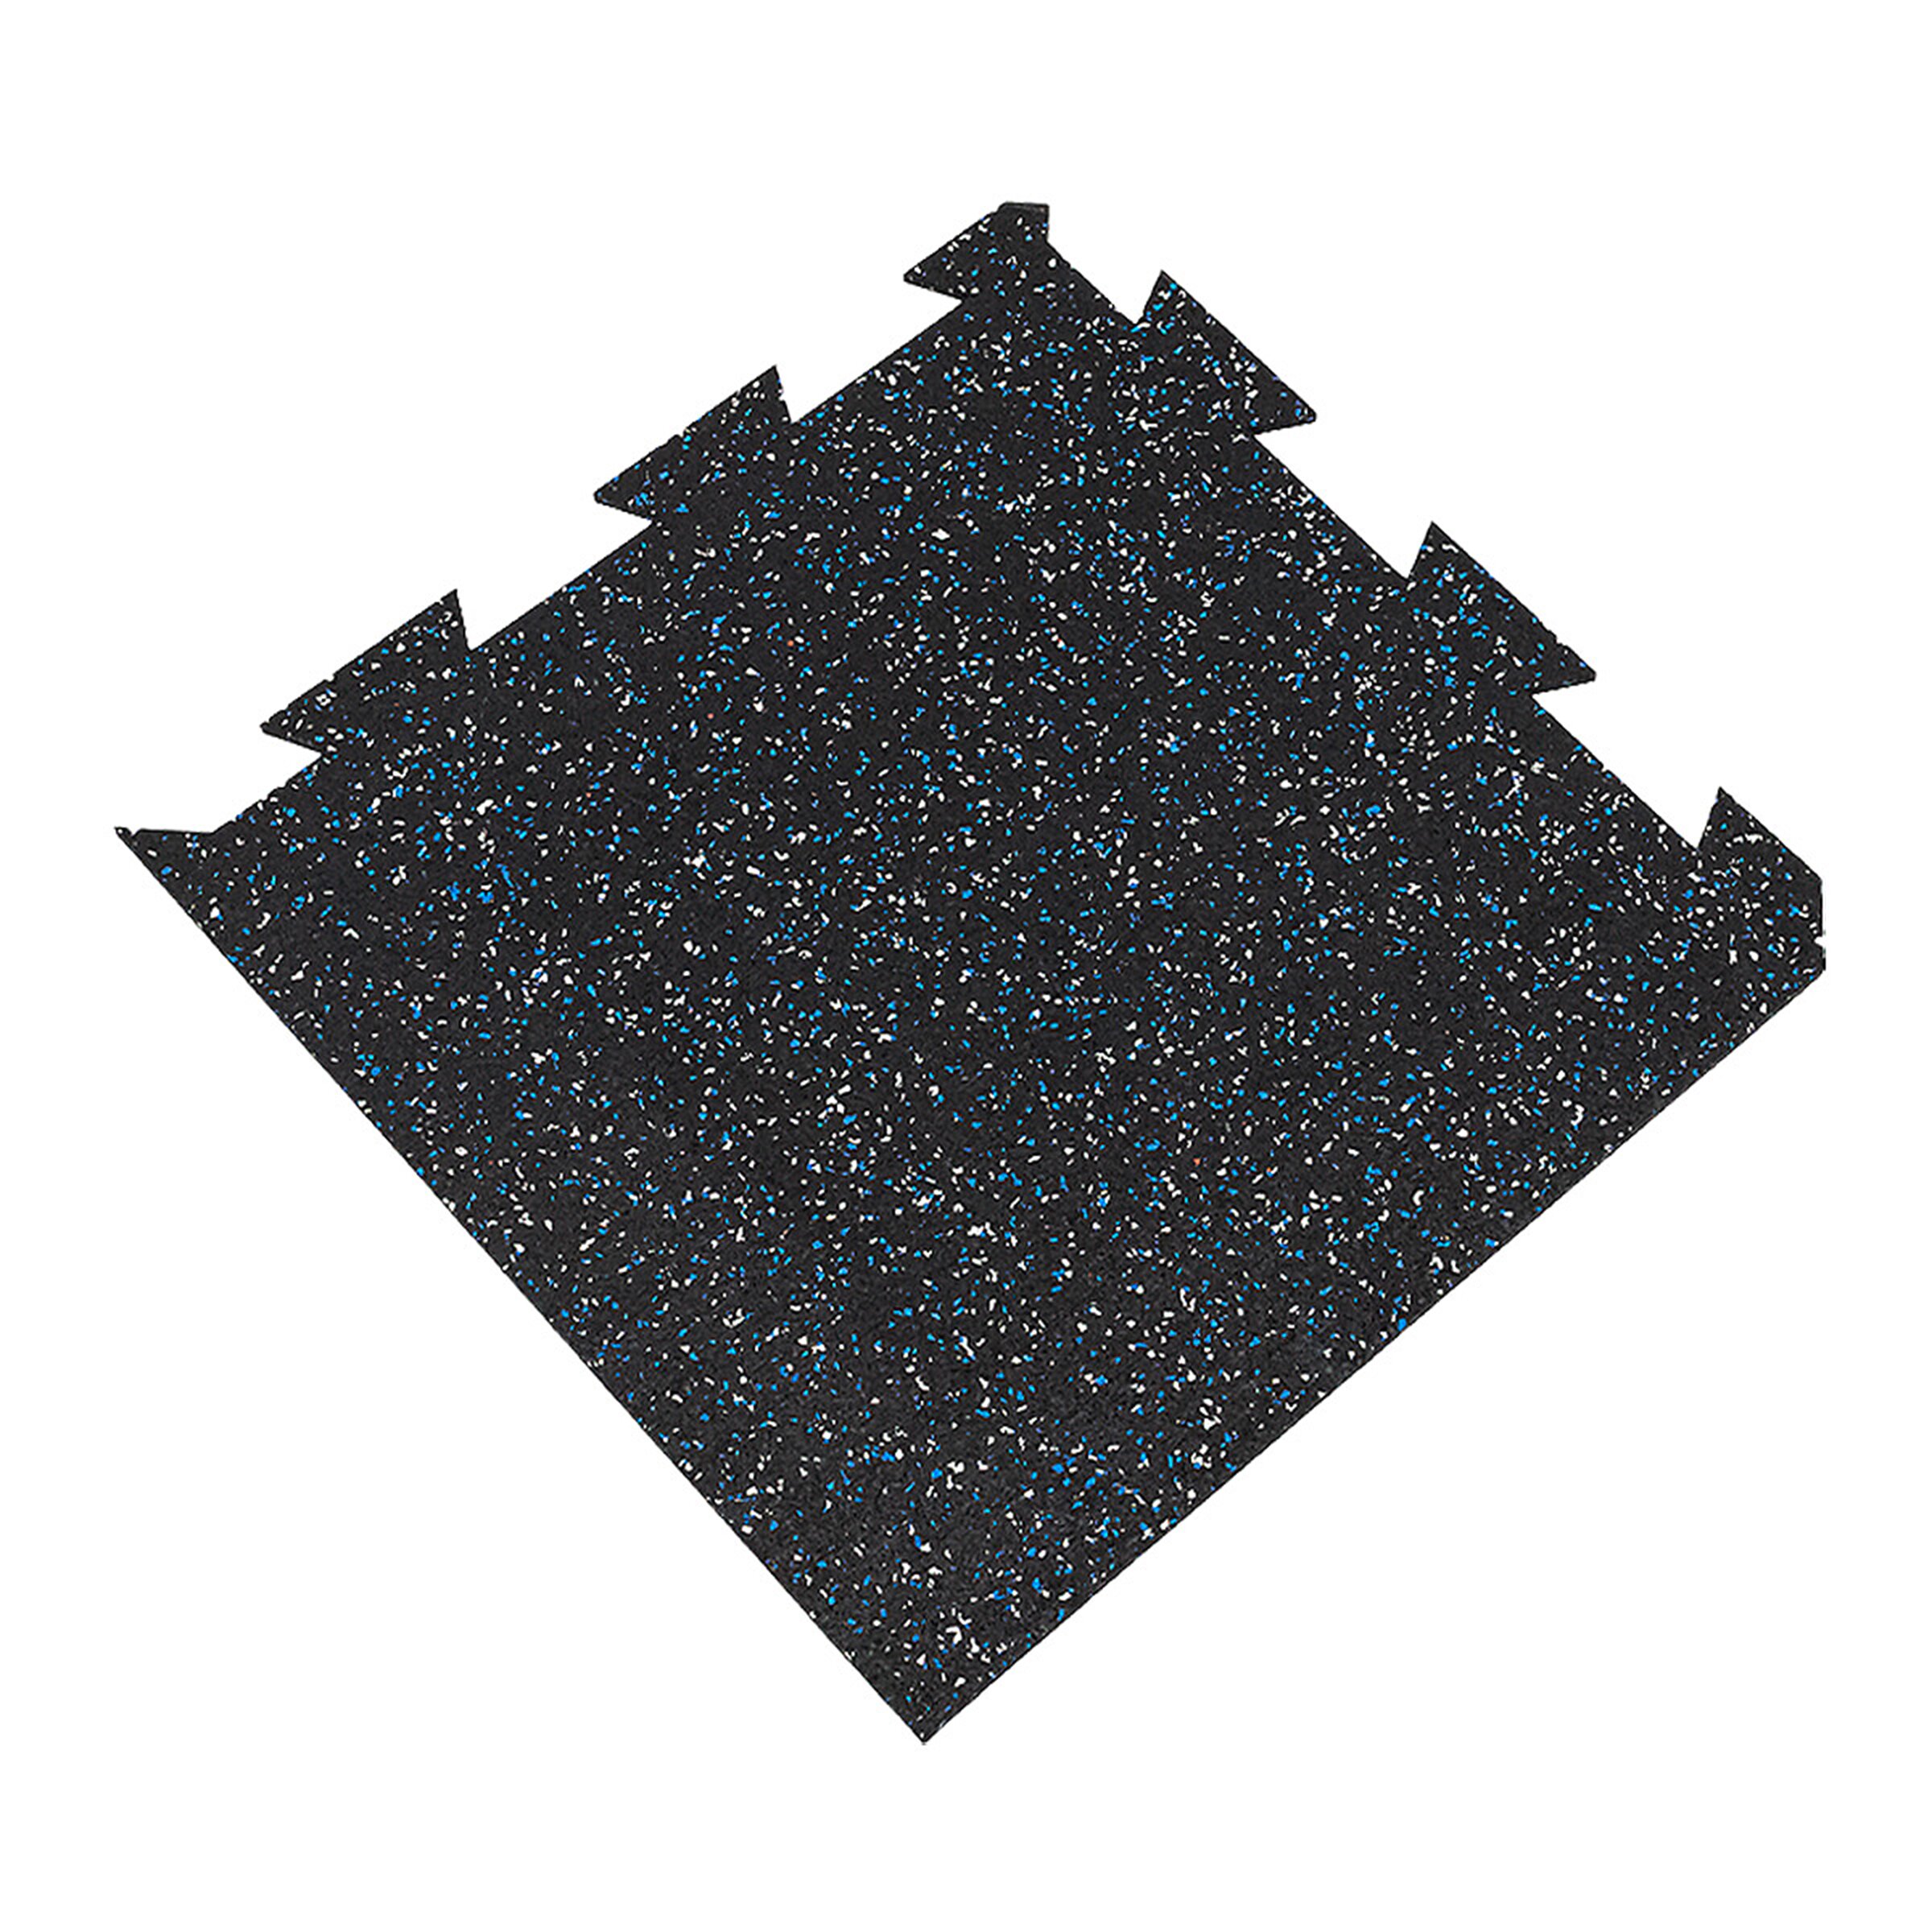 Čierno-bielo-modrá podlahová guma (puzzle - roh) FLOMA FitFlo SF1050 - dĺžka 50 cm, šírka 50 cm, výška 1,6 cm